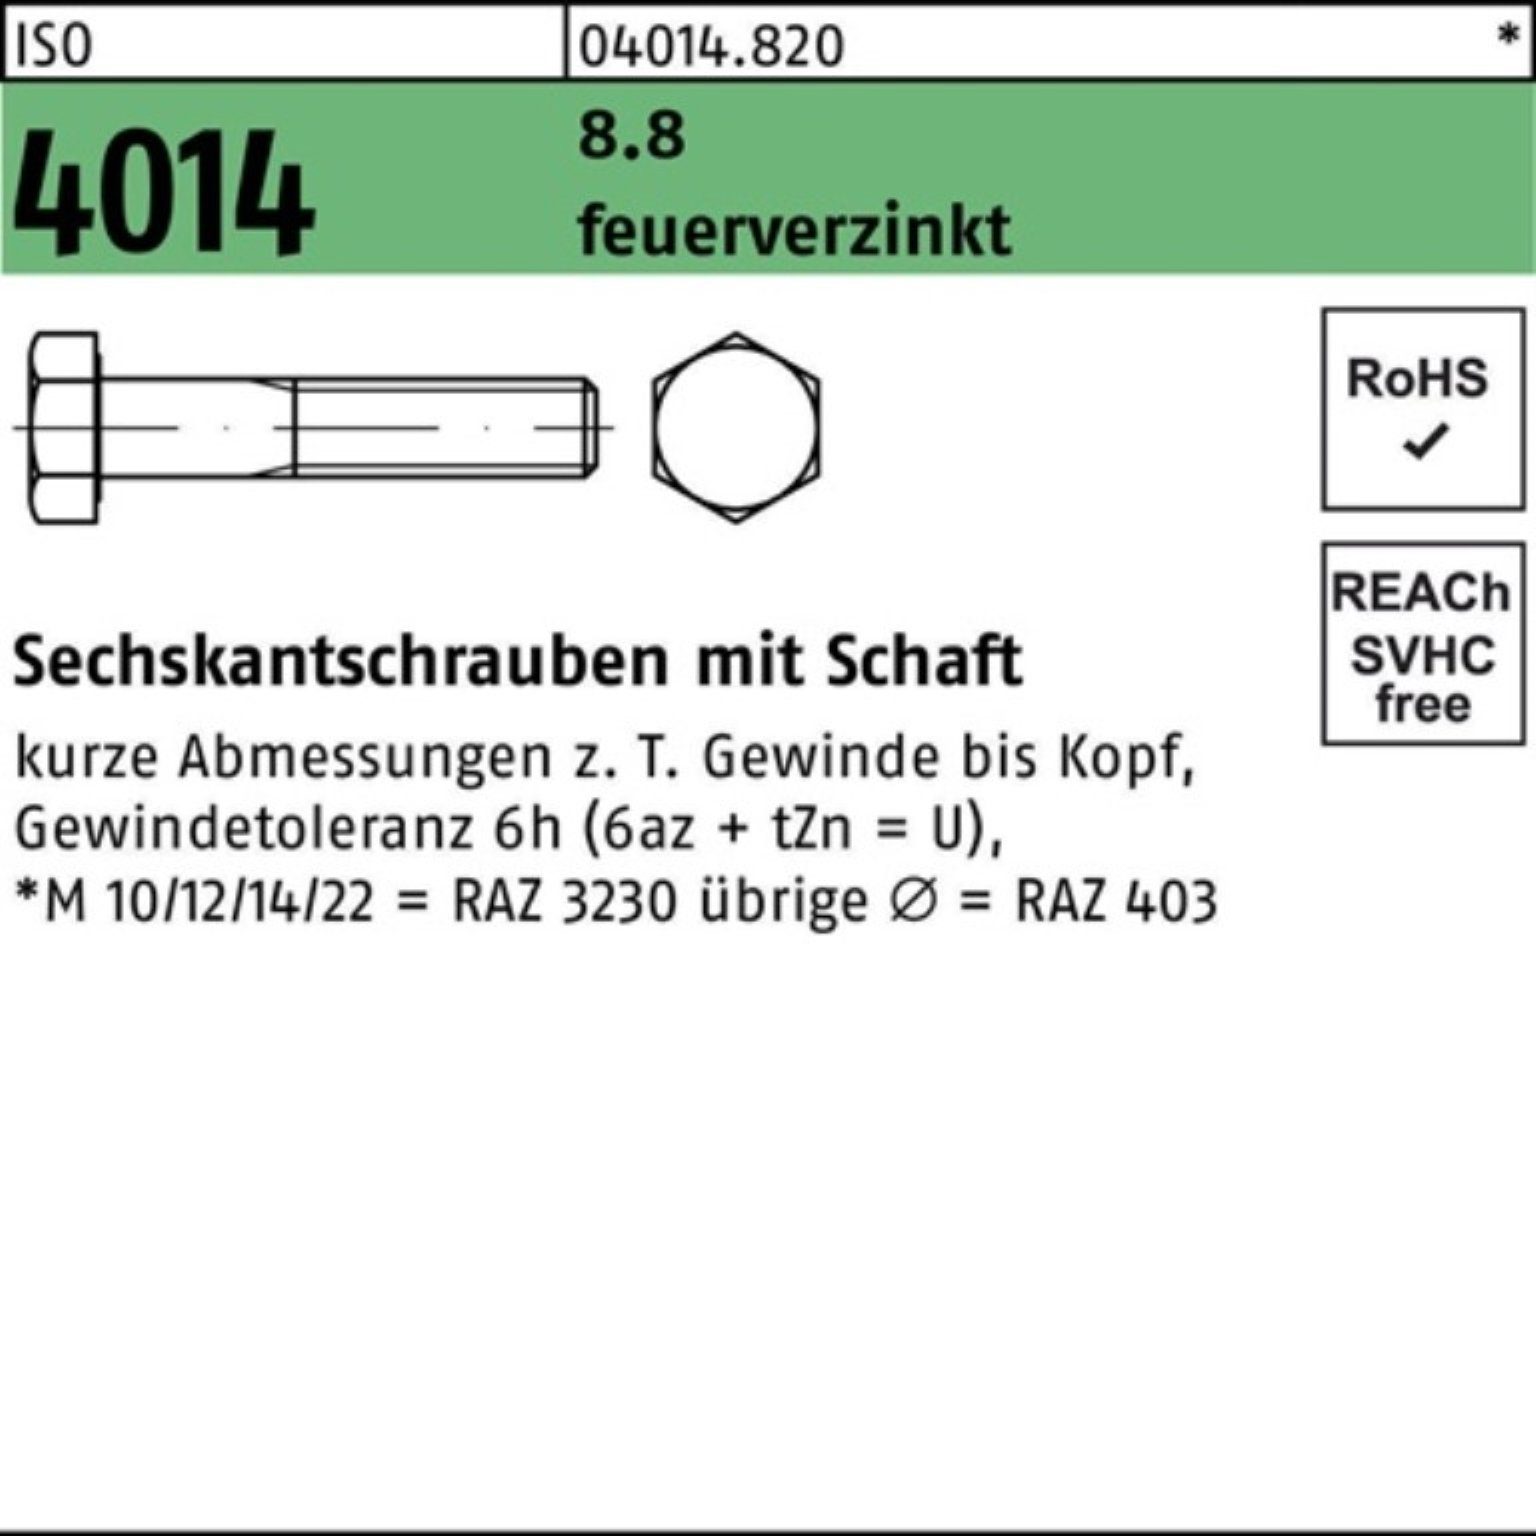 Bufab Sechskantschraube 100er Pack Sechskantschraube ISO 4014 Schaft M16x 180 8.8 feuerverz. 2